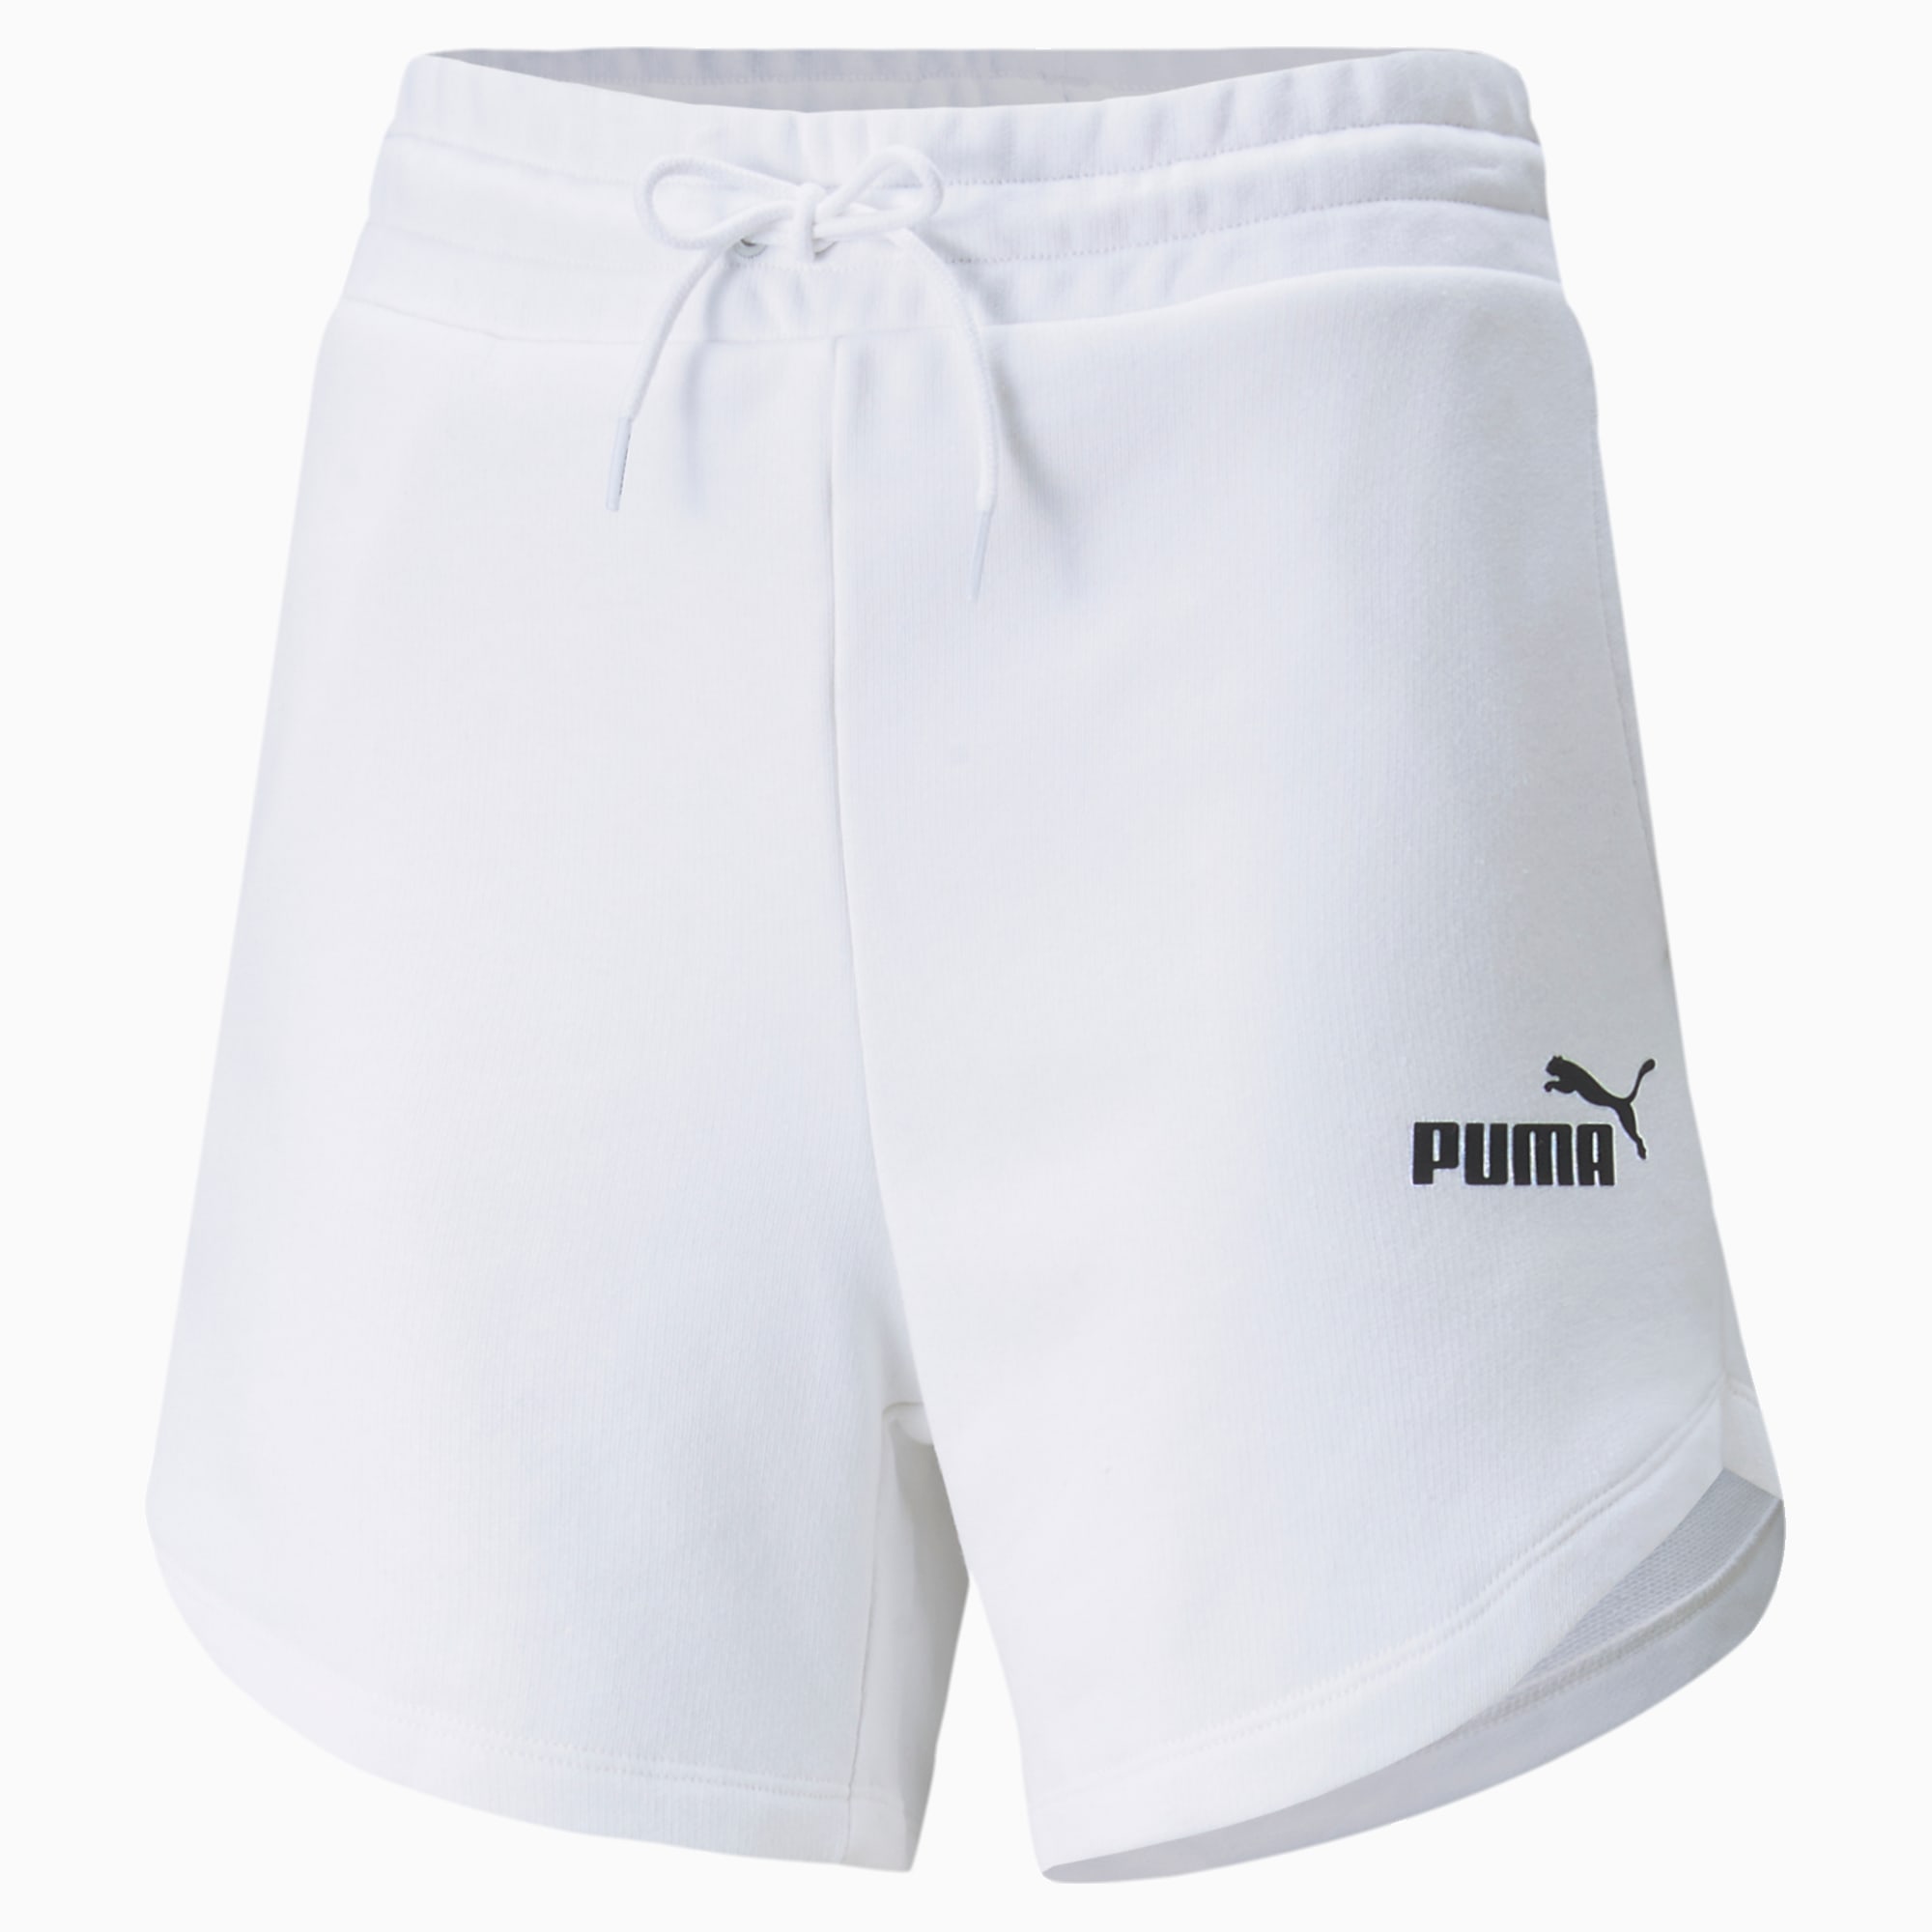 PUMA Short Taille Haute Essentials Femme, Blanc